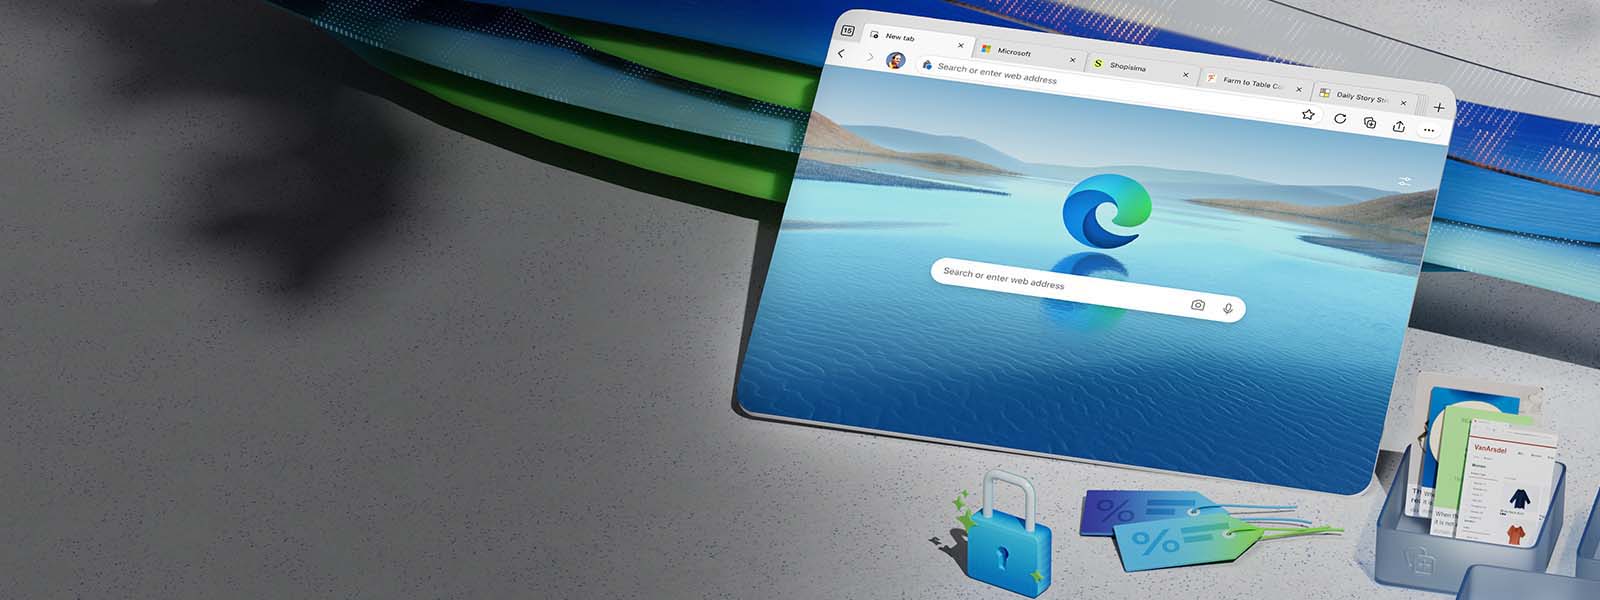 Zaslon uređaja na kojem se prikazuje ikona preglednika Microsoft Edge s vodoravnom pozadinom